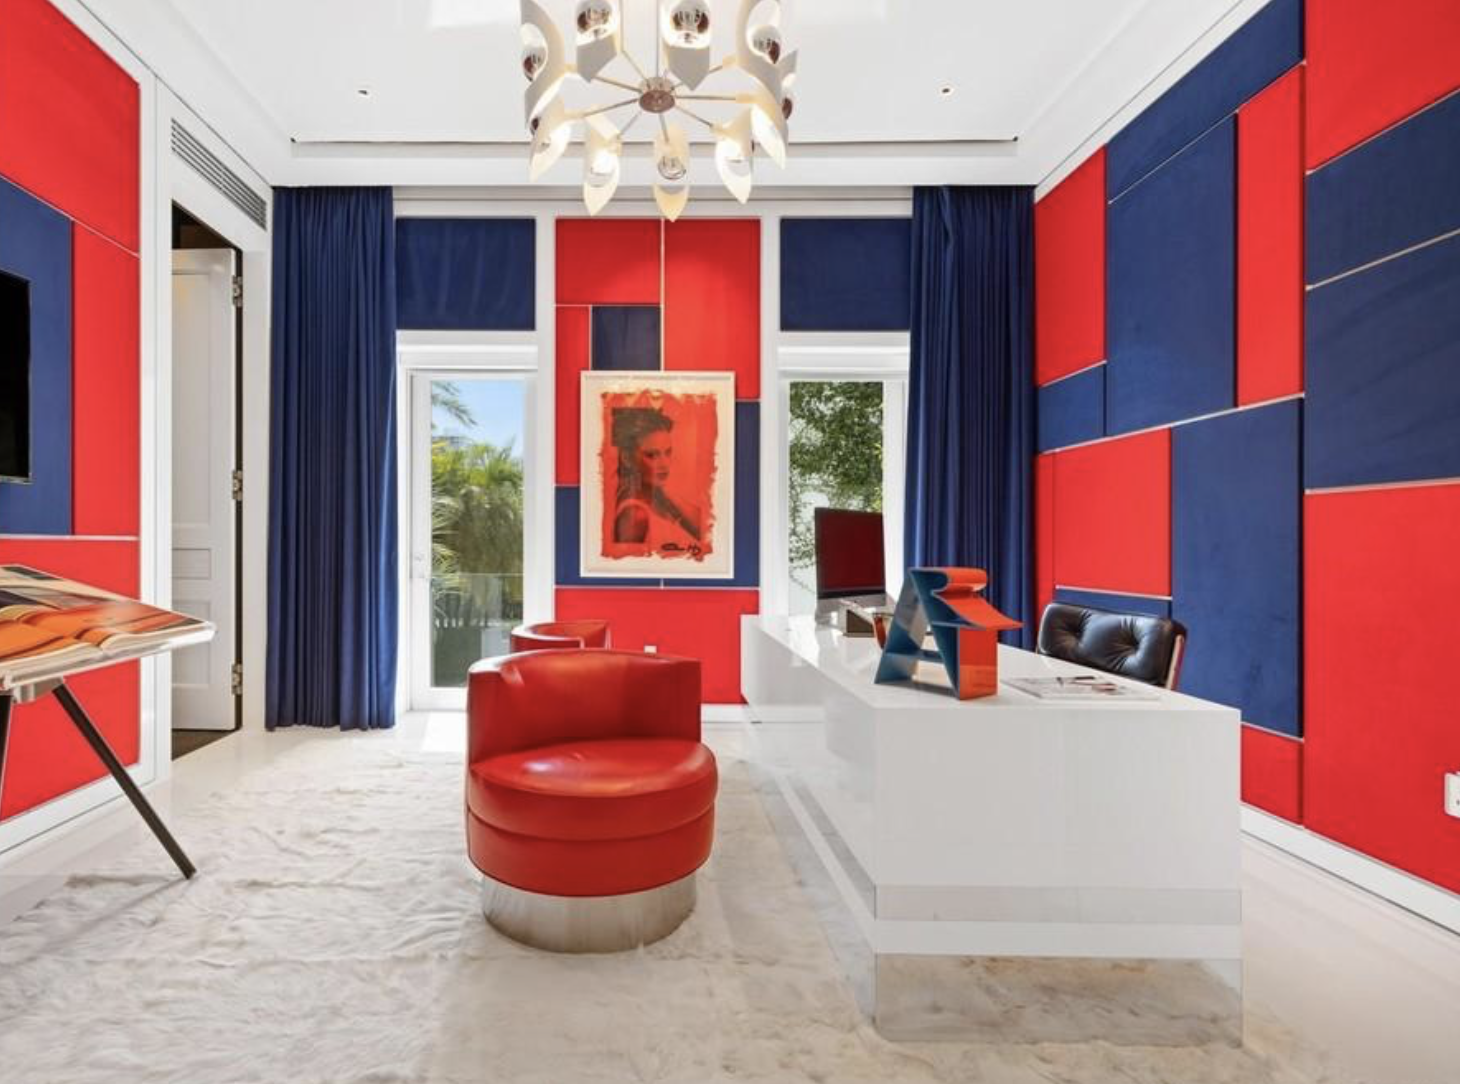 Casa Tommy Hilfiger despacho en color rojo y azul